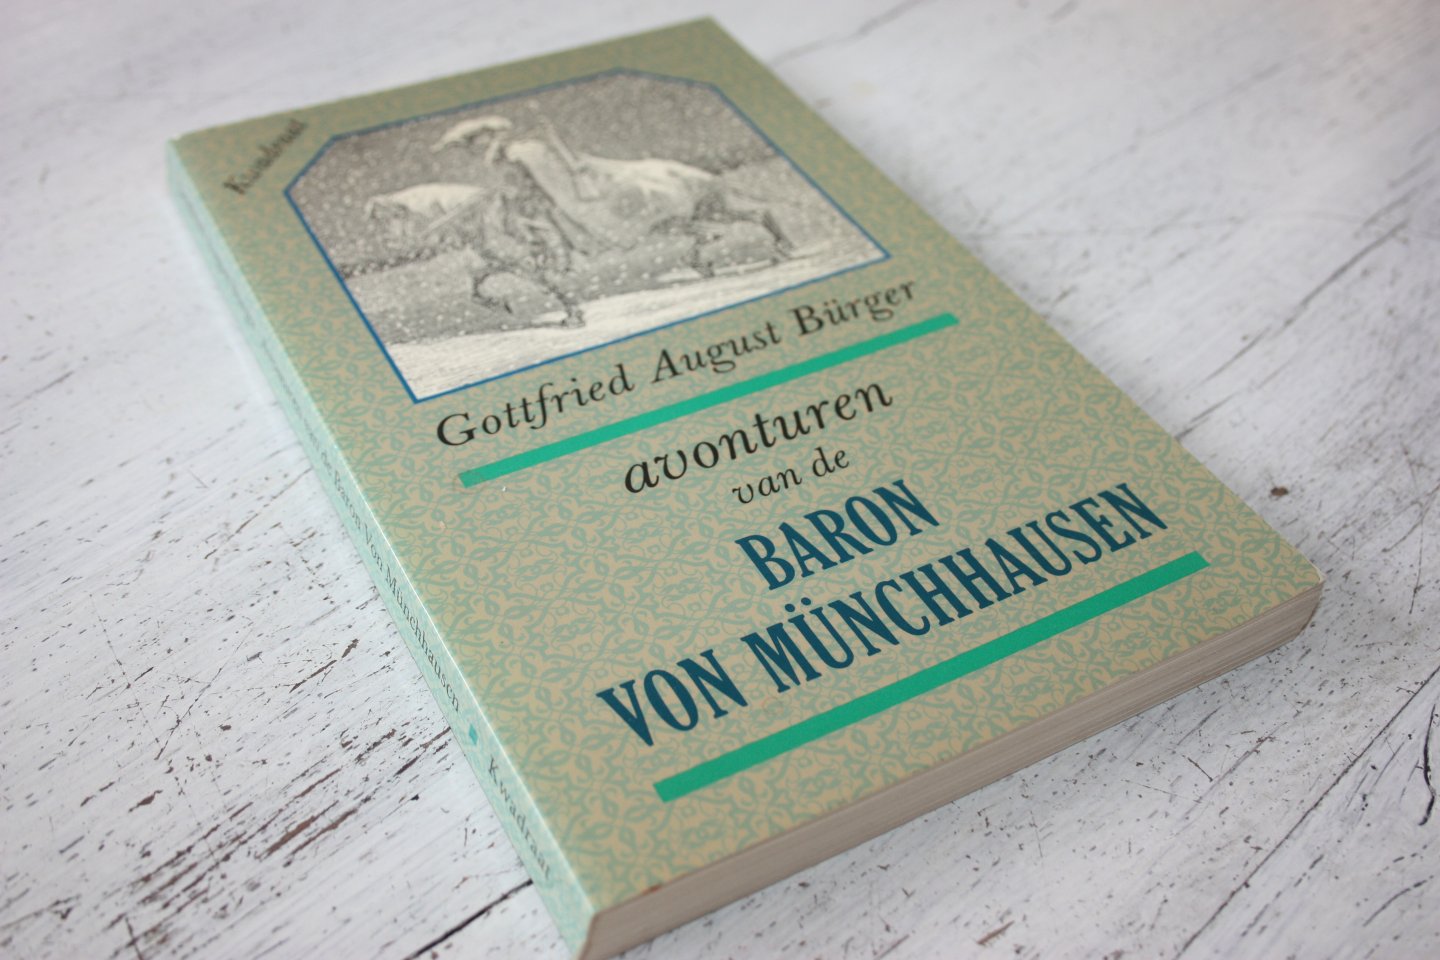 Burger, Gottfried August - AVONTUREN VAN DE BARON VON MUNCHHAUSEN